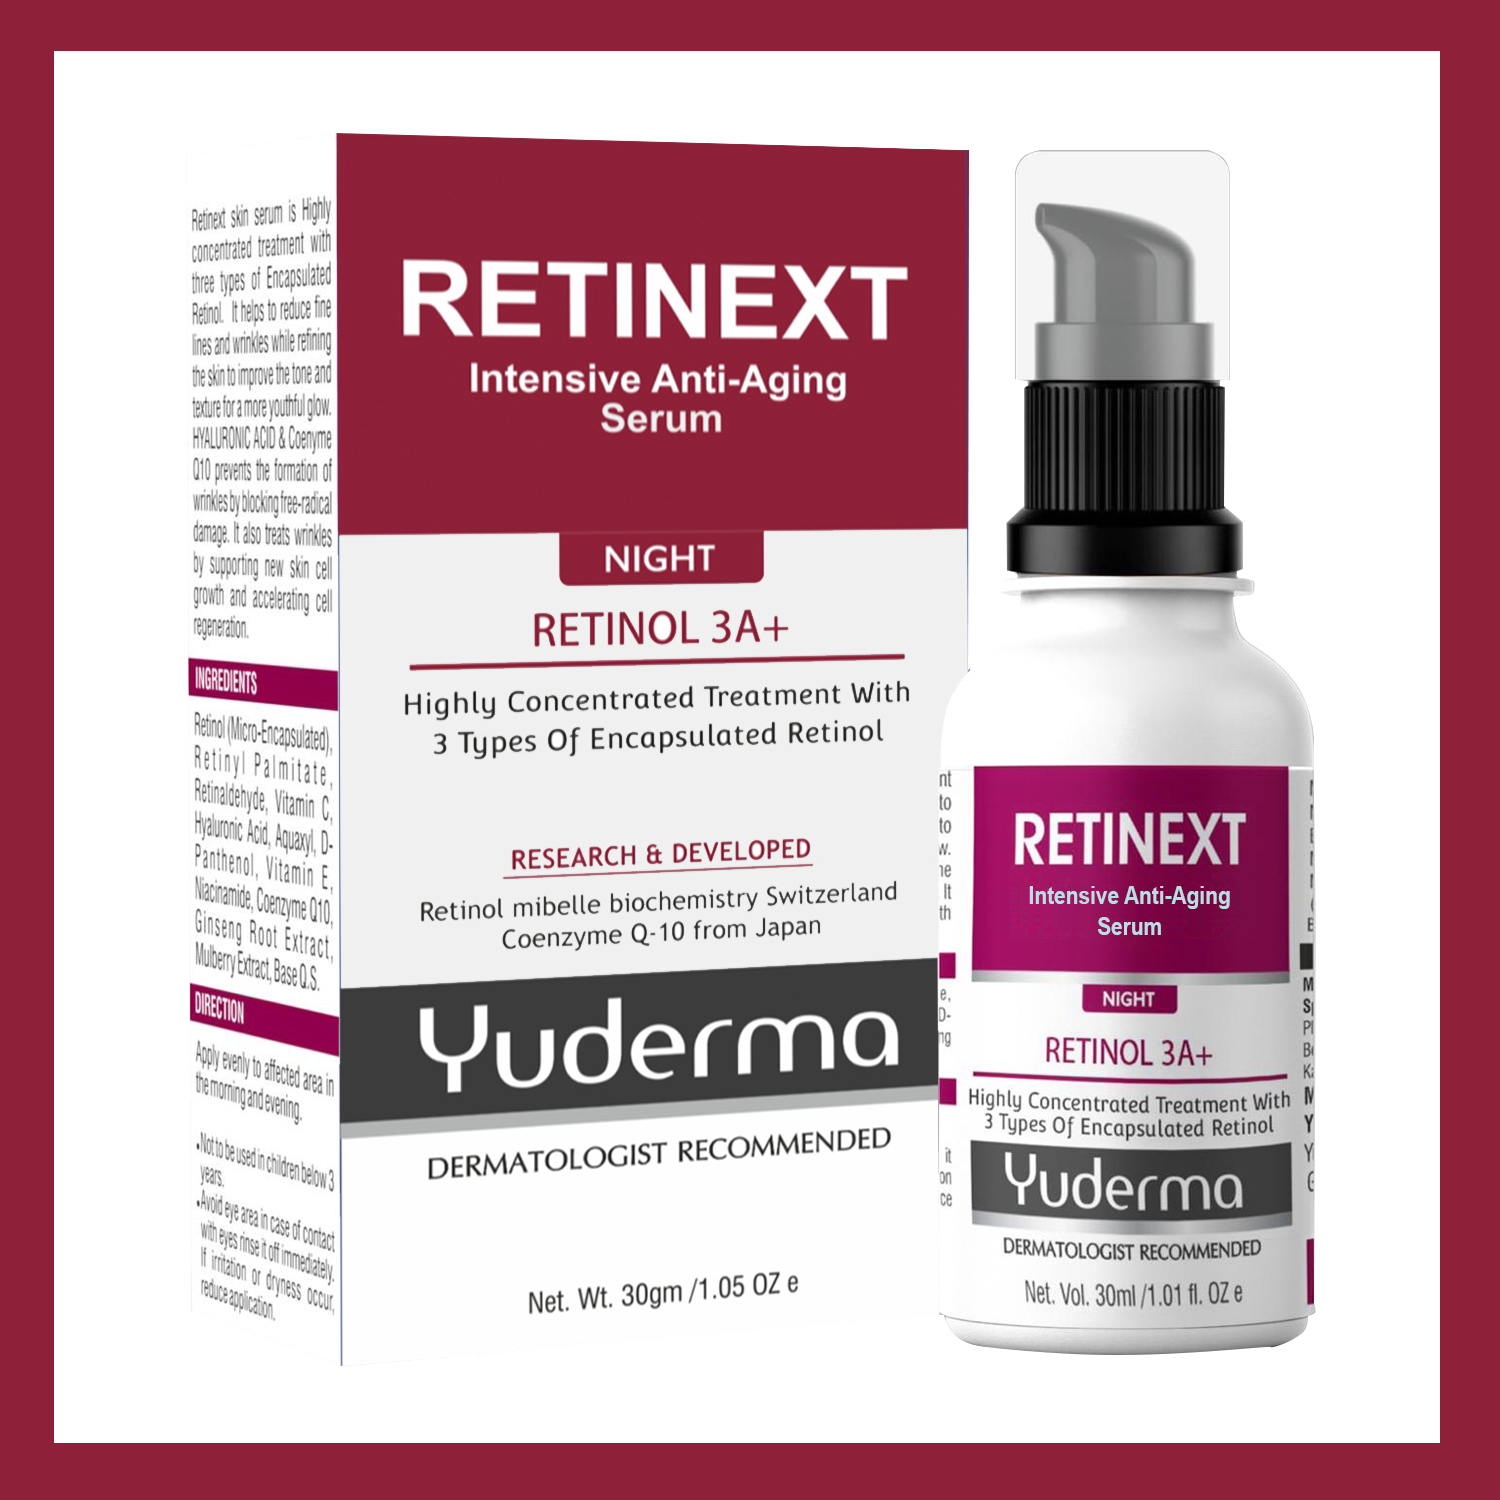 Retinext anti-aging serum